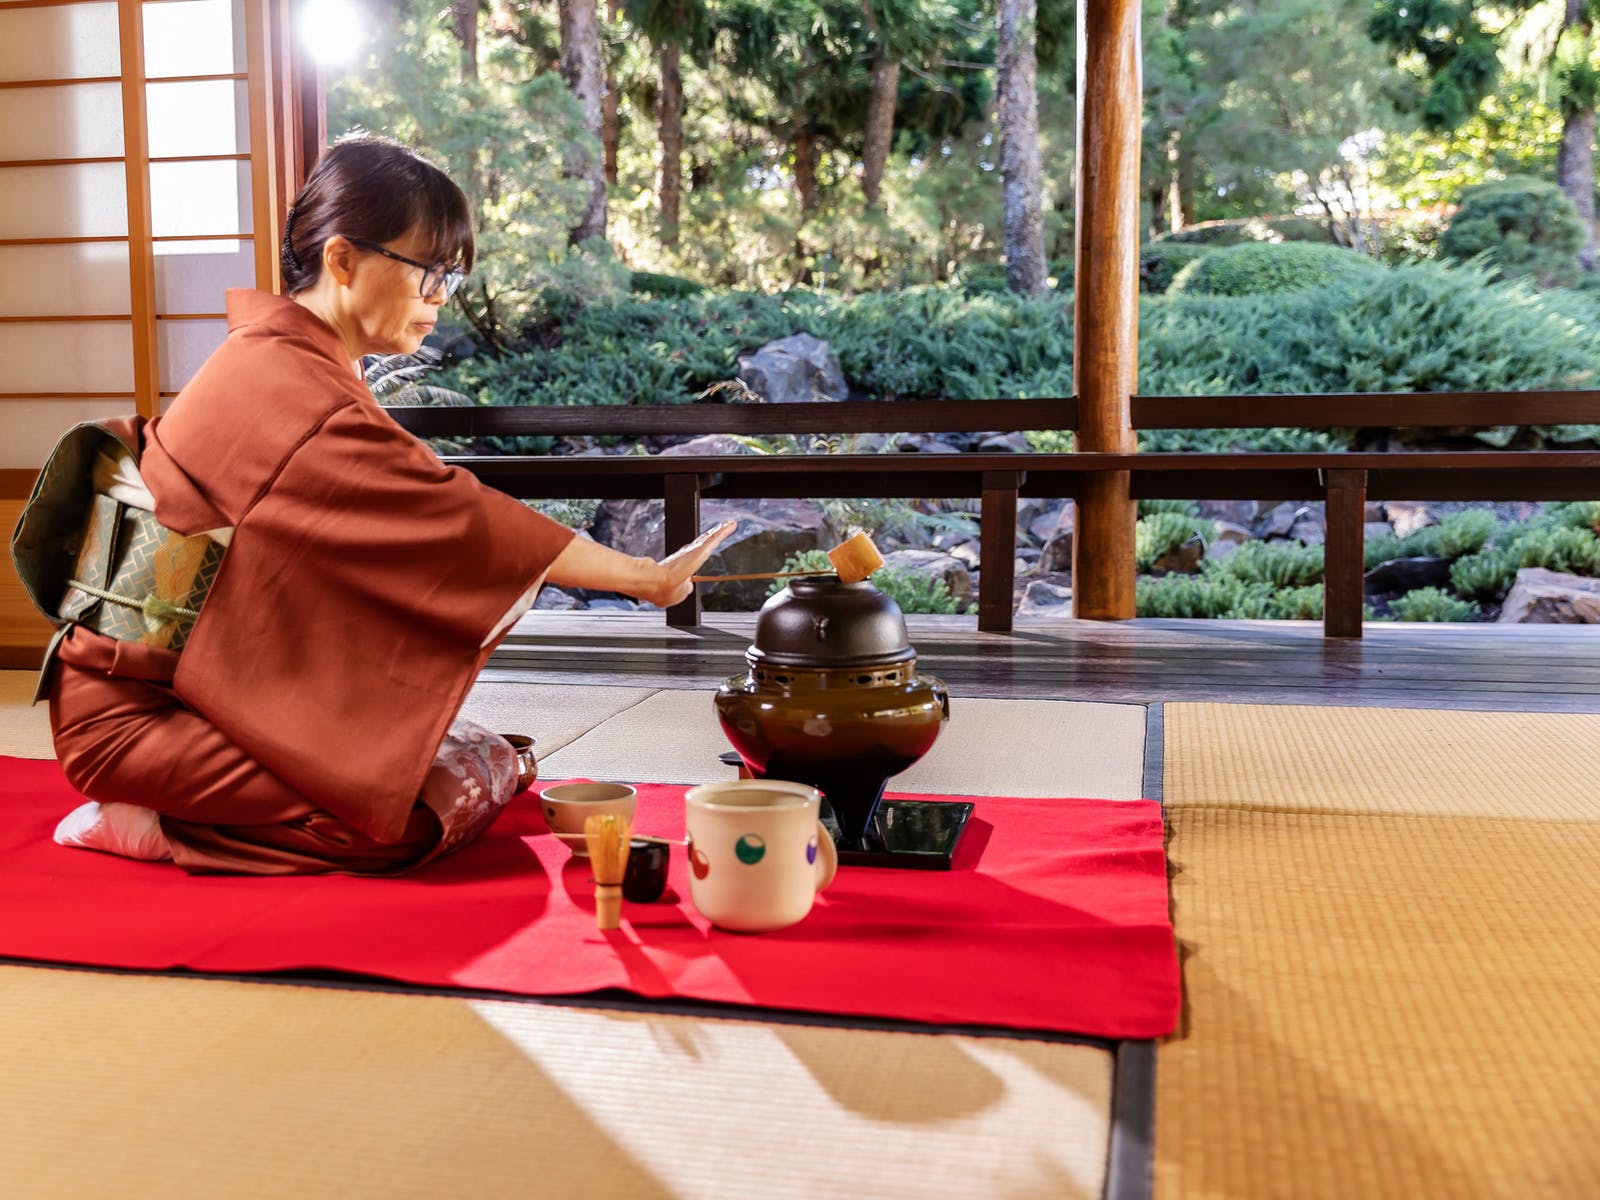 Japanese Tea Ceremony